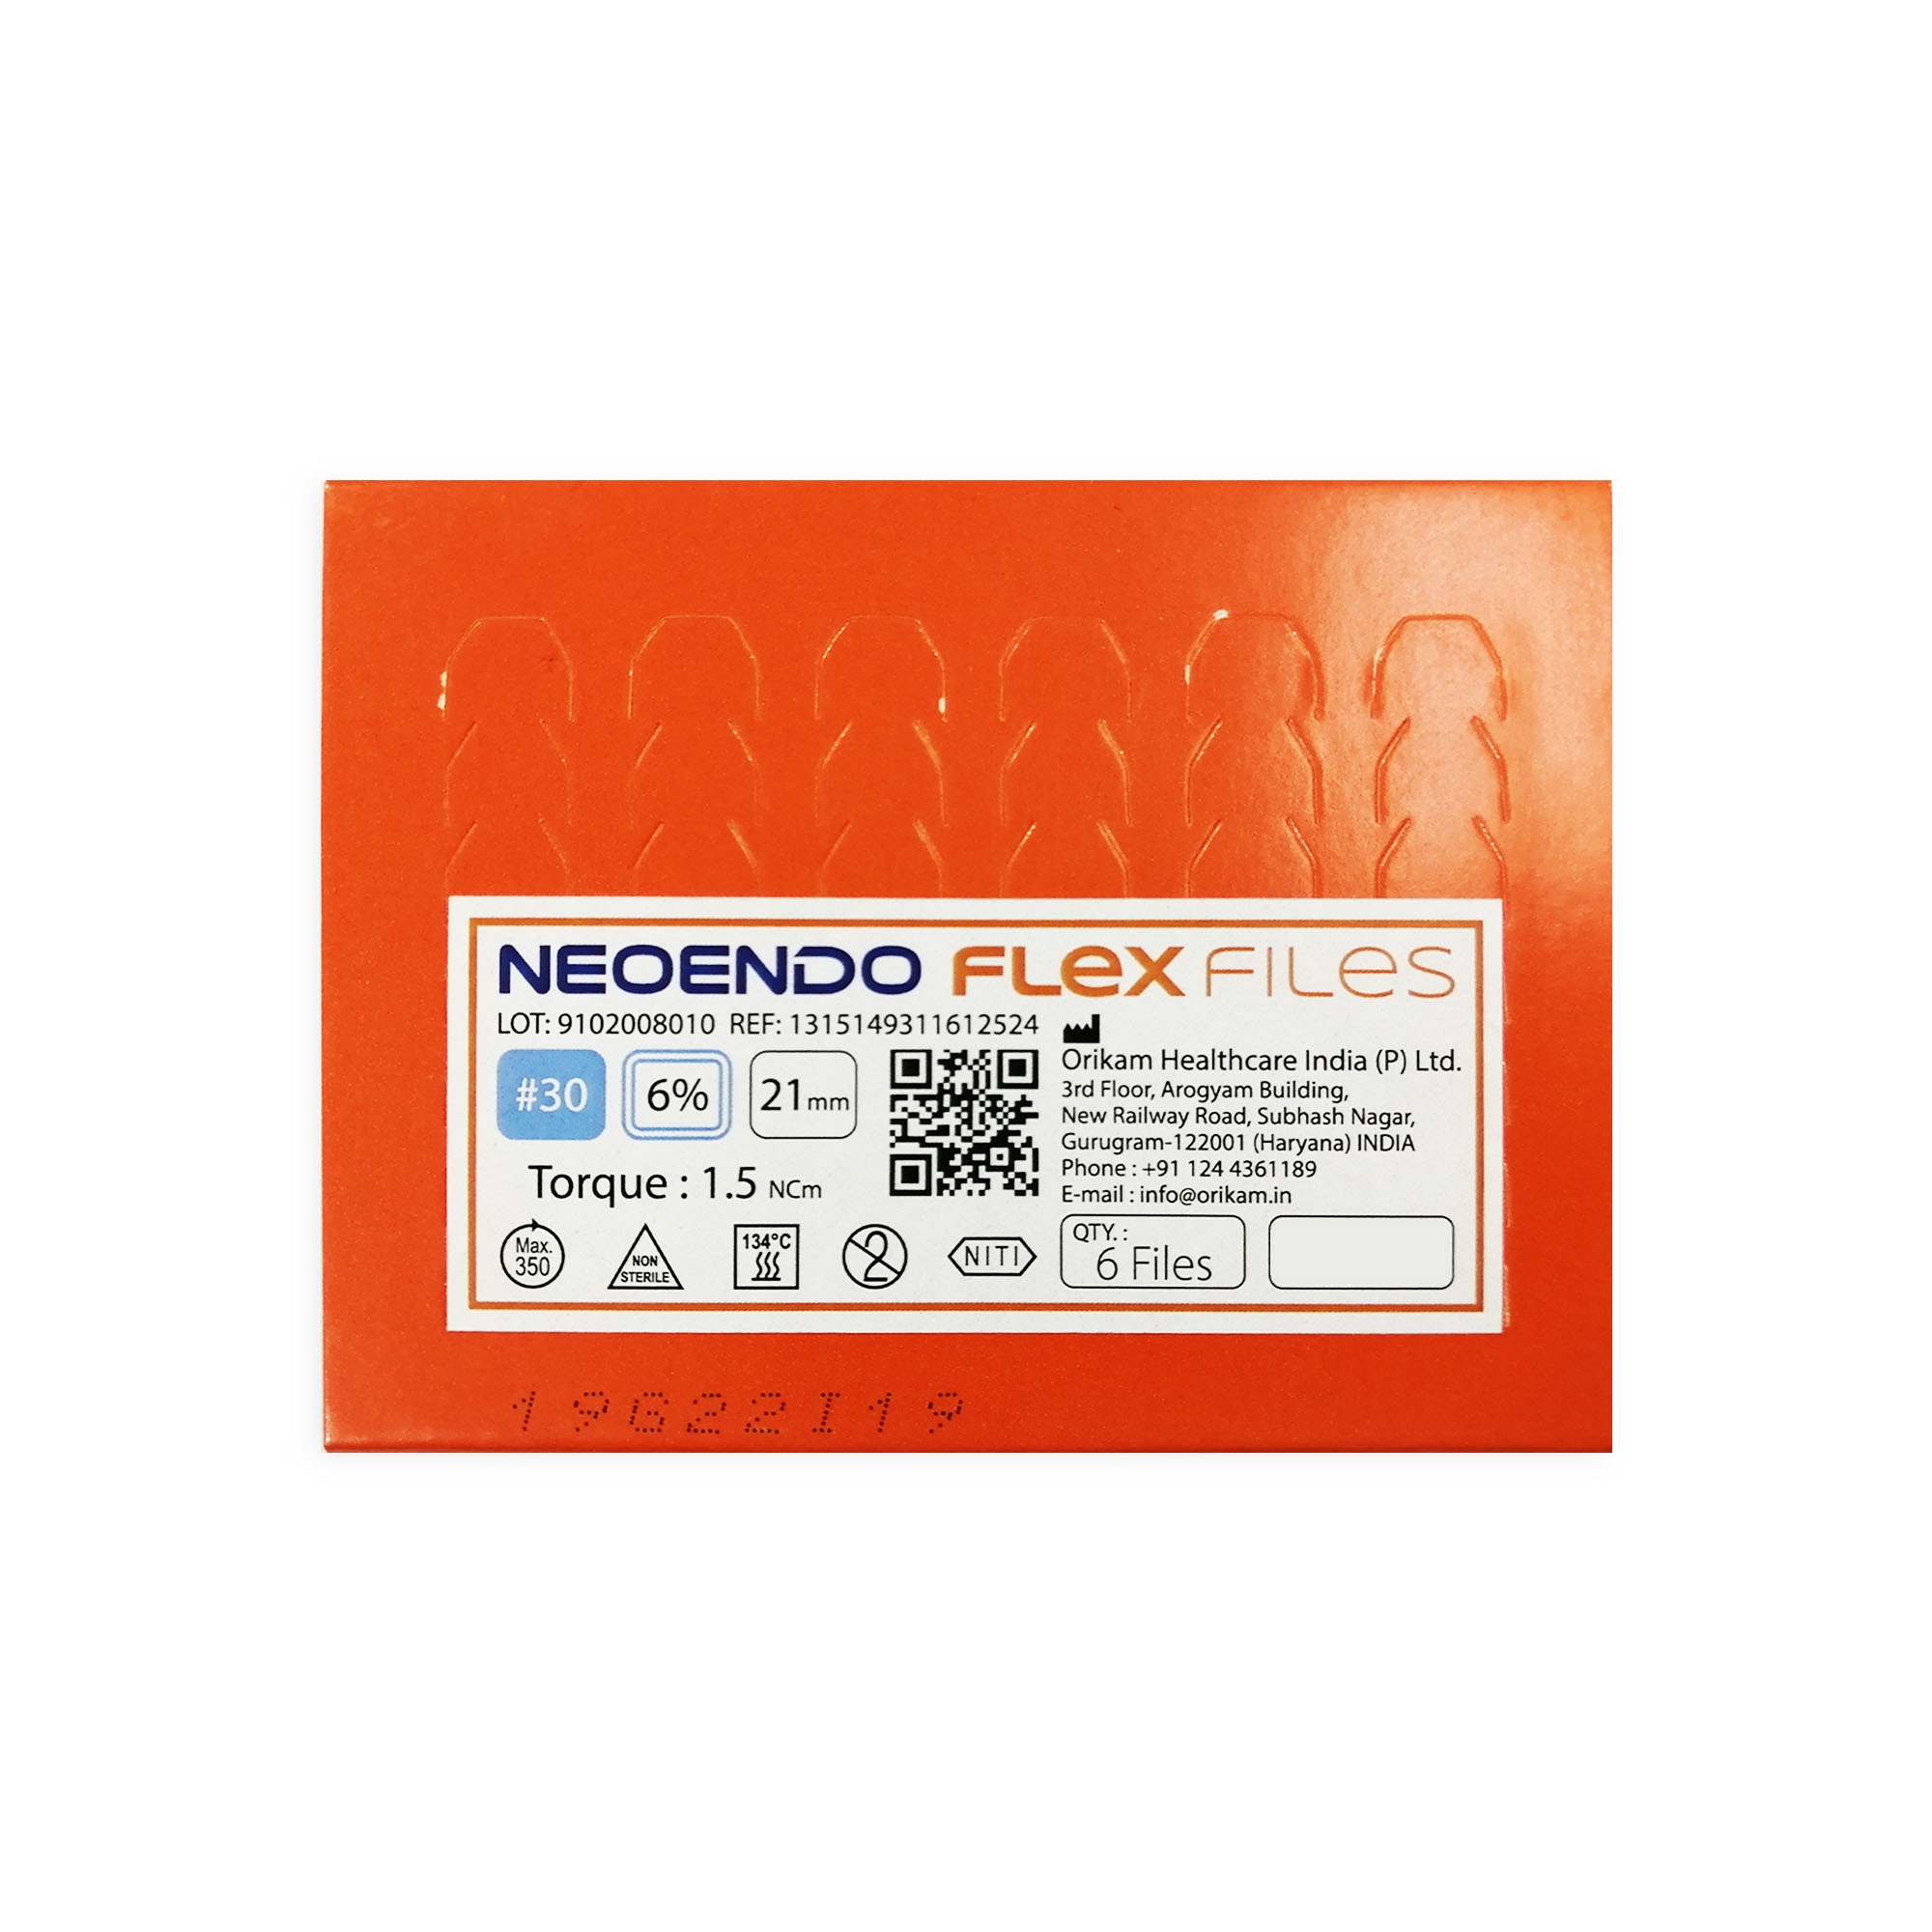 NeoEndo Flex Files 25mm 35/4 Endo Rotary Files